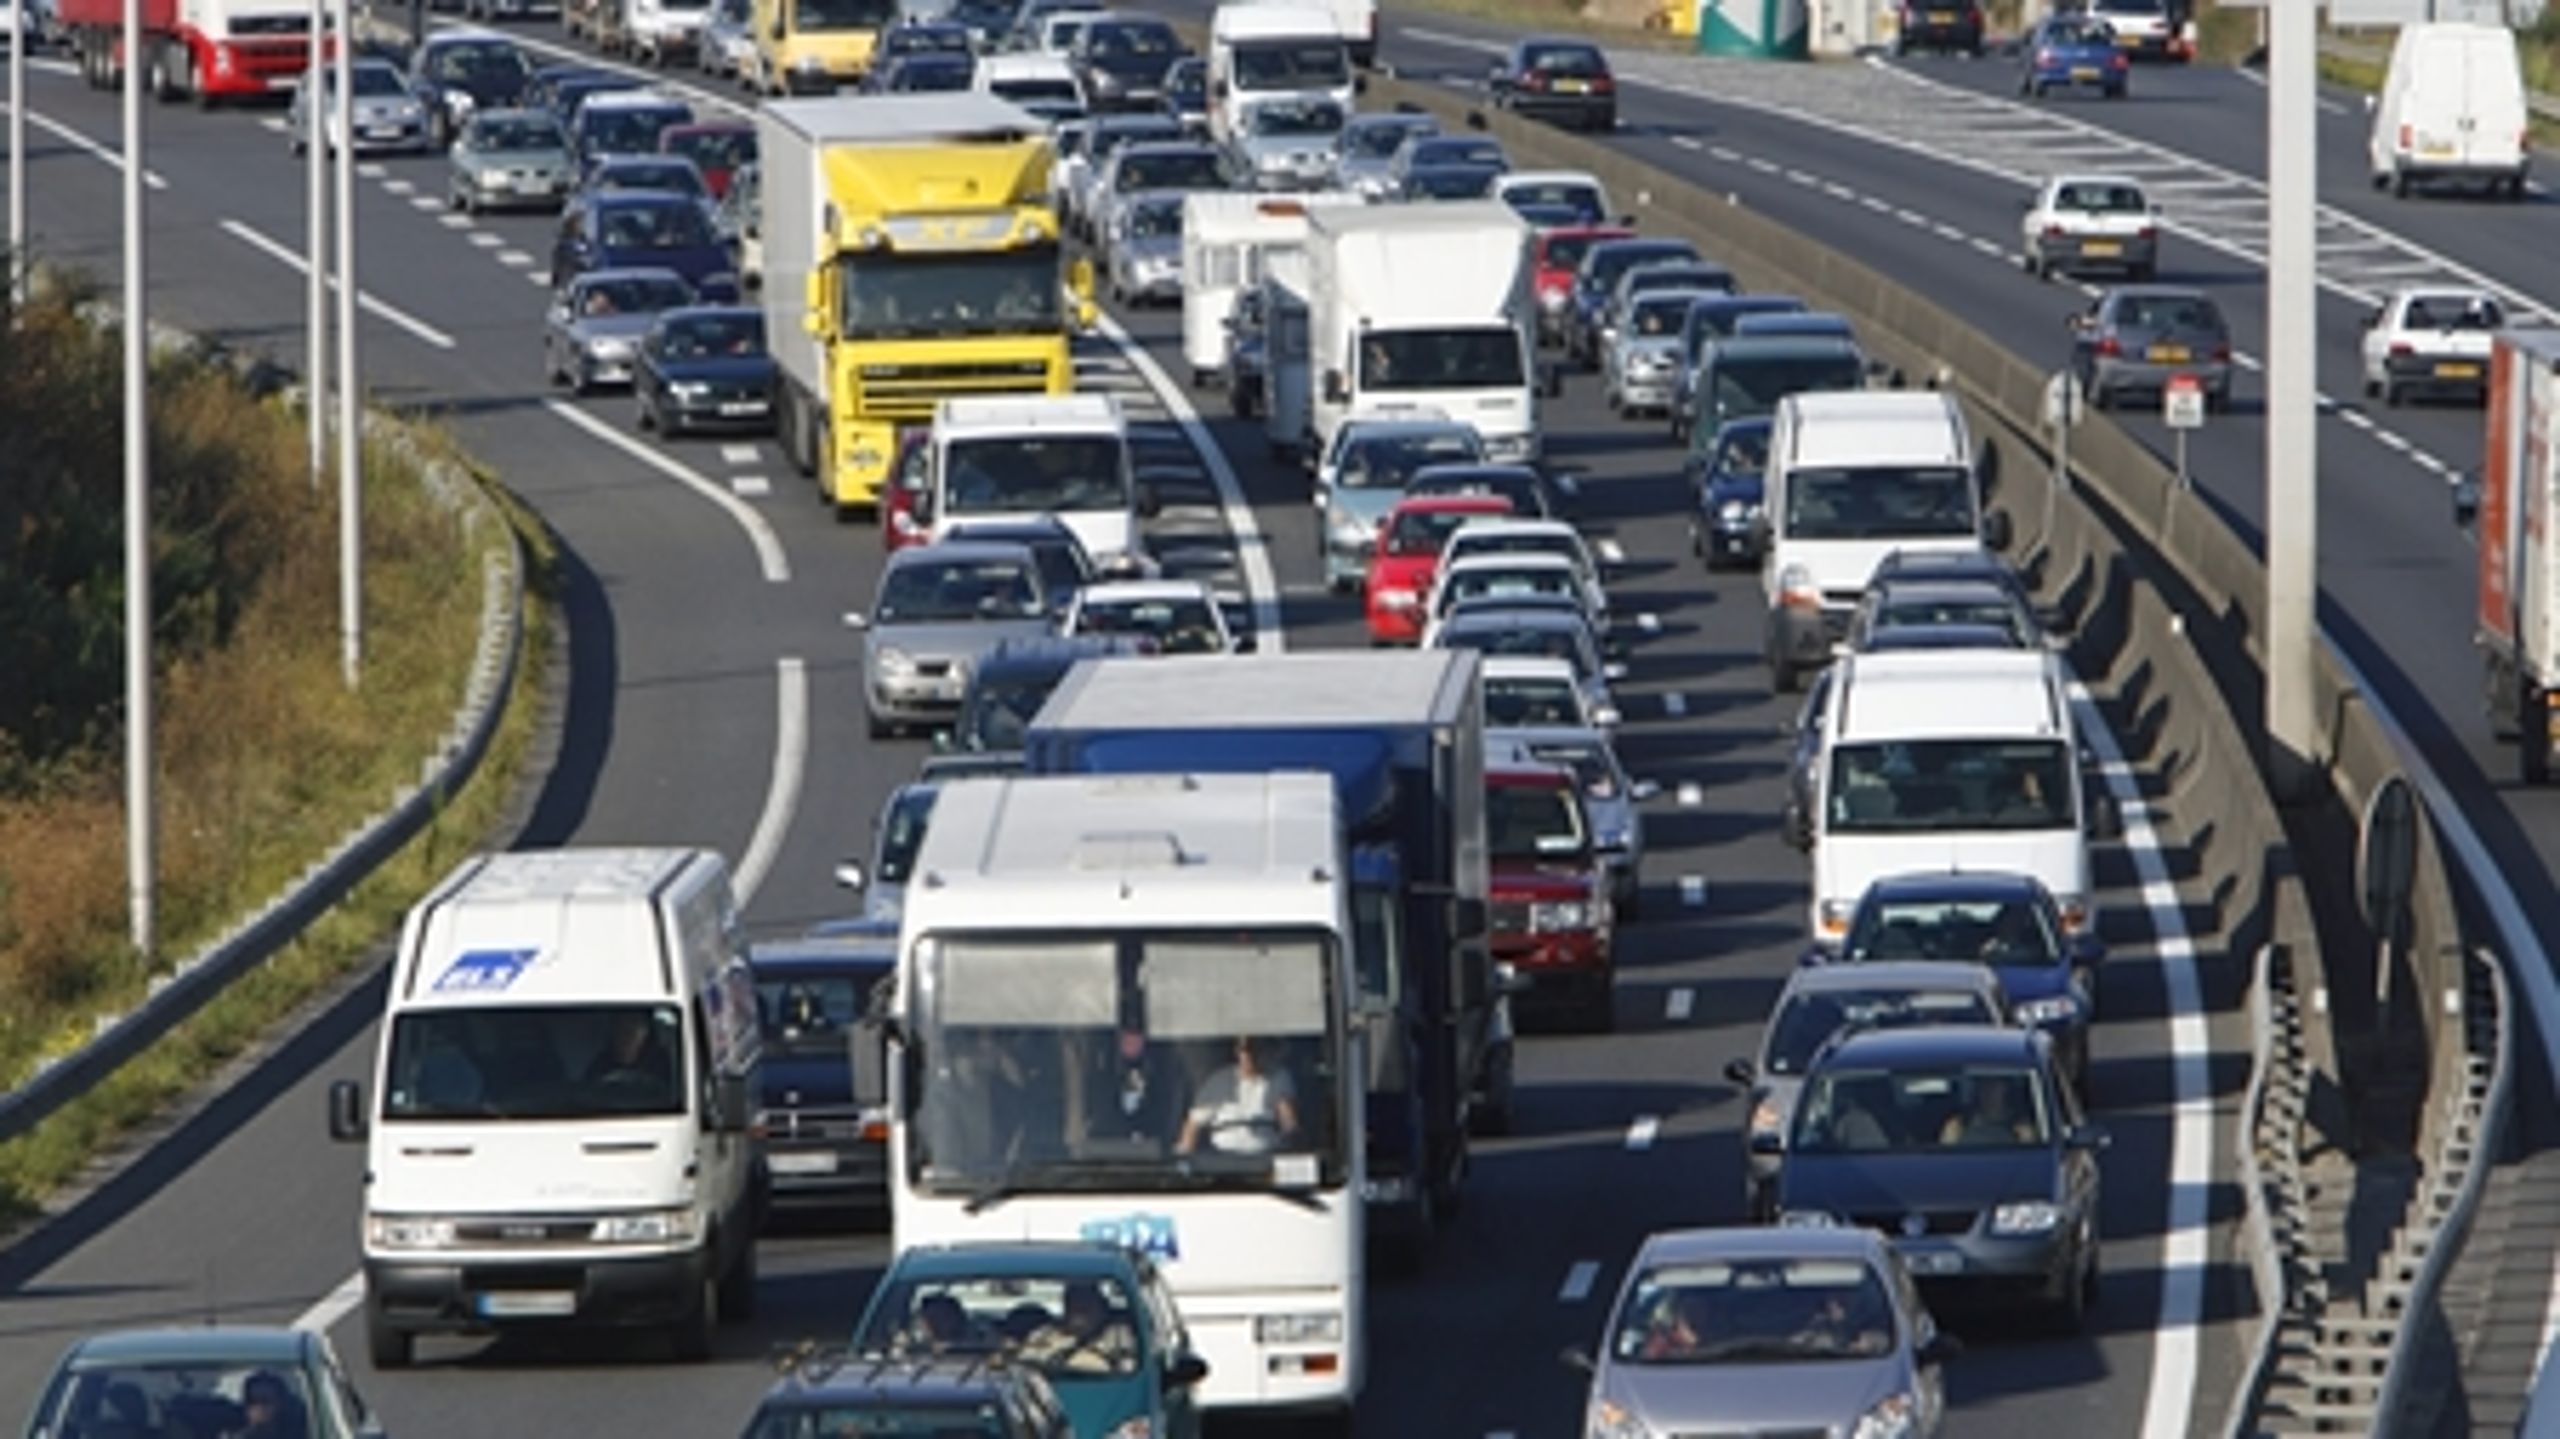 Vejdirektoratet har ikke godt nok øje for andre løsninger på trafikproblemer end at udbygge vejnettet, lyder kritikken fra Rådet for Bæredygtig Trafik.